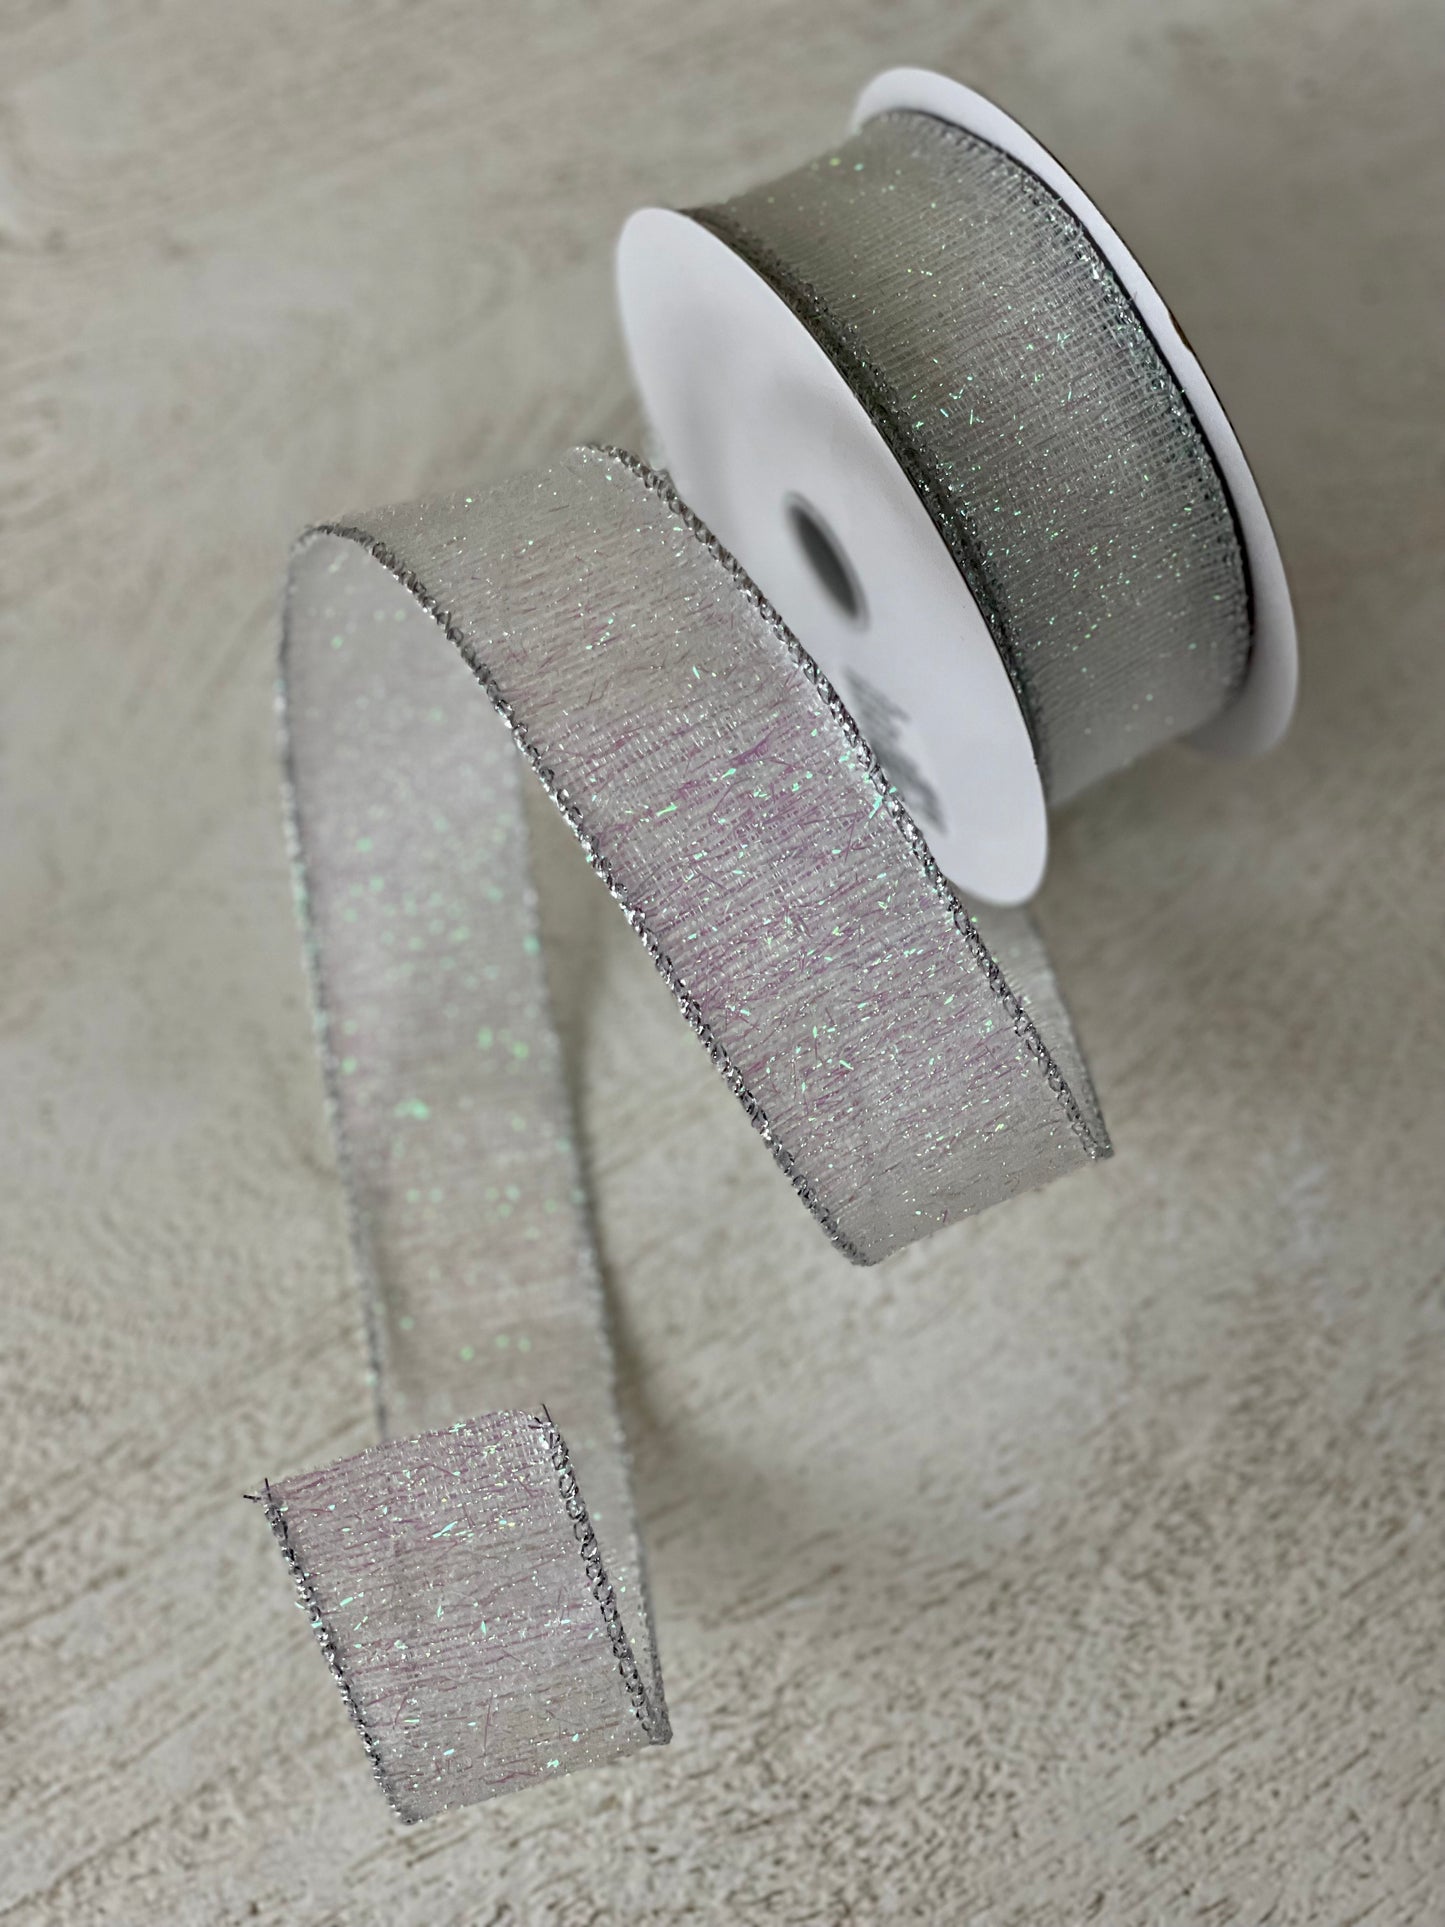 1.5 Inch Woven Iridescent Confetti Metallic Ribbon